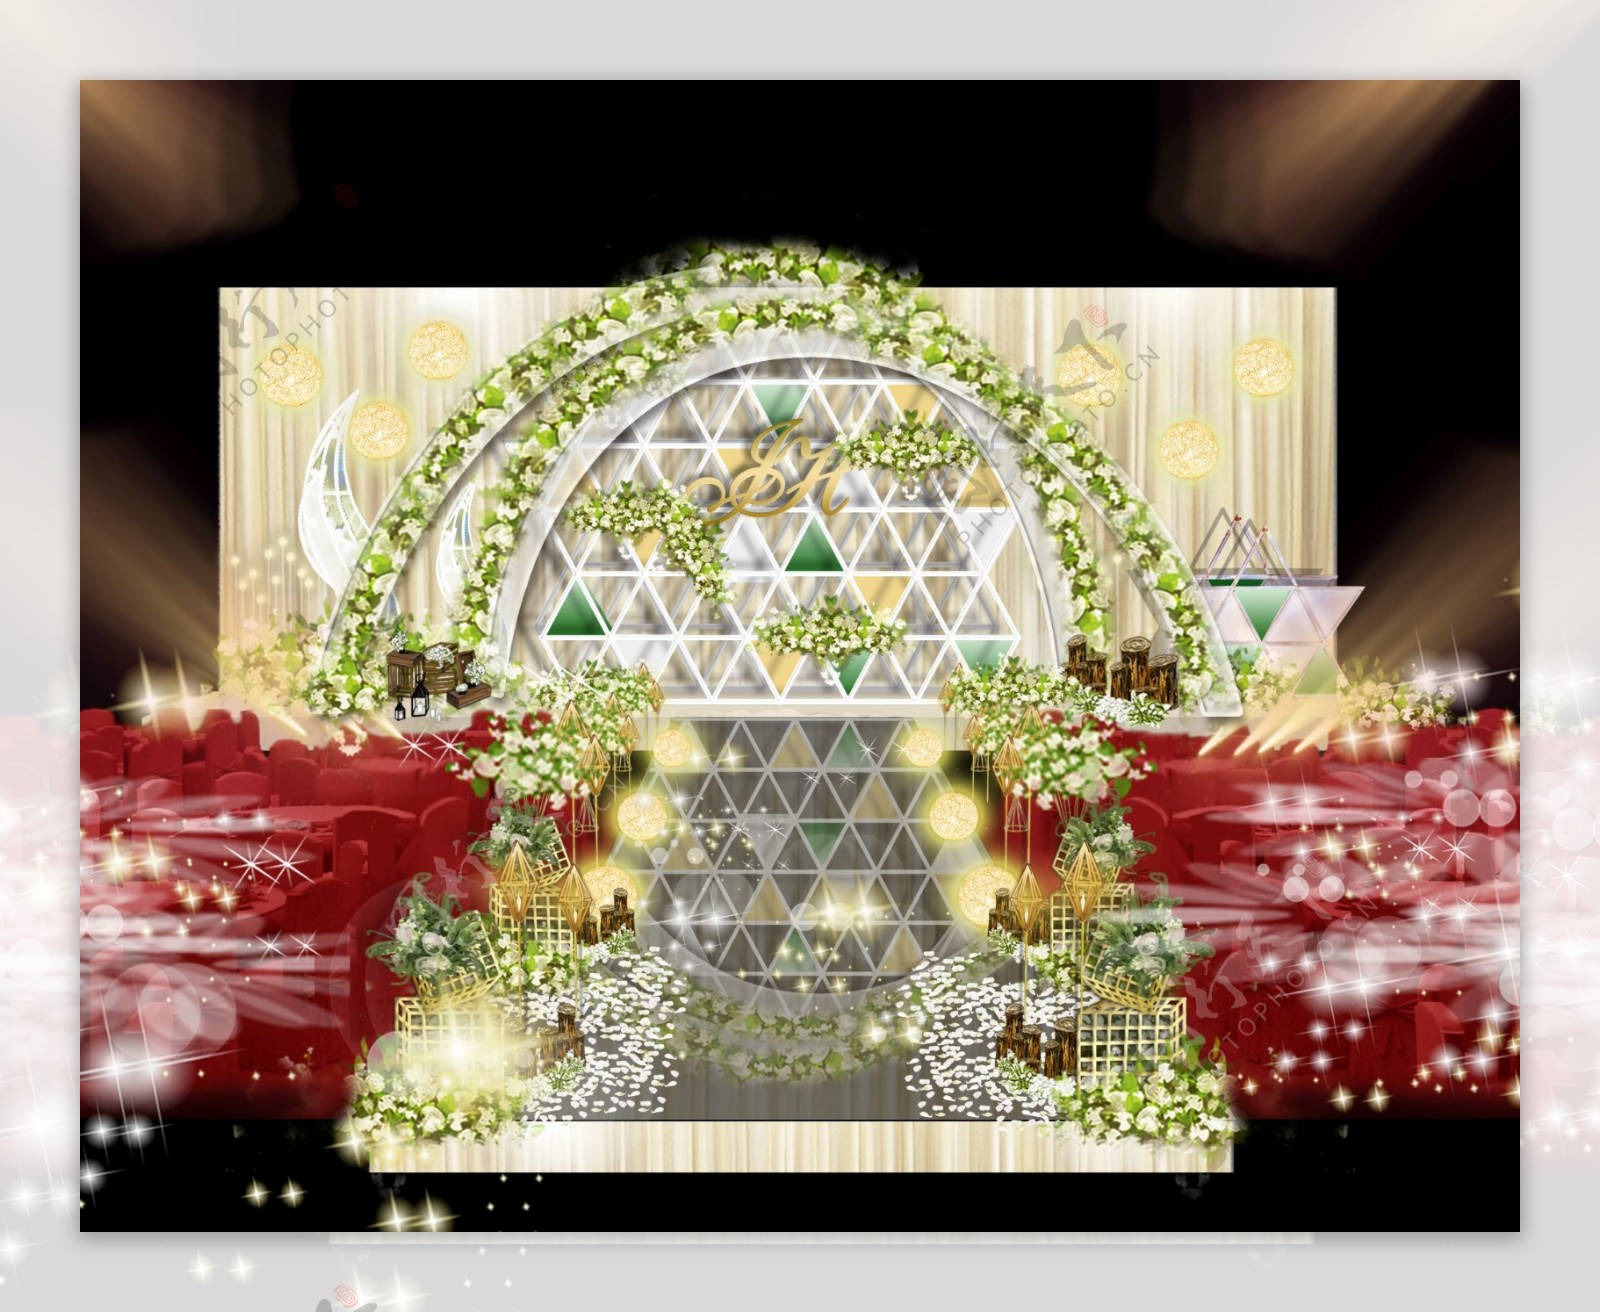 白绿色系婚礼布置设计图